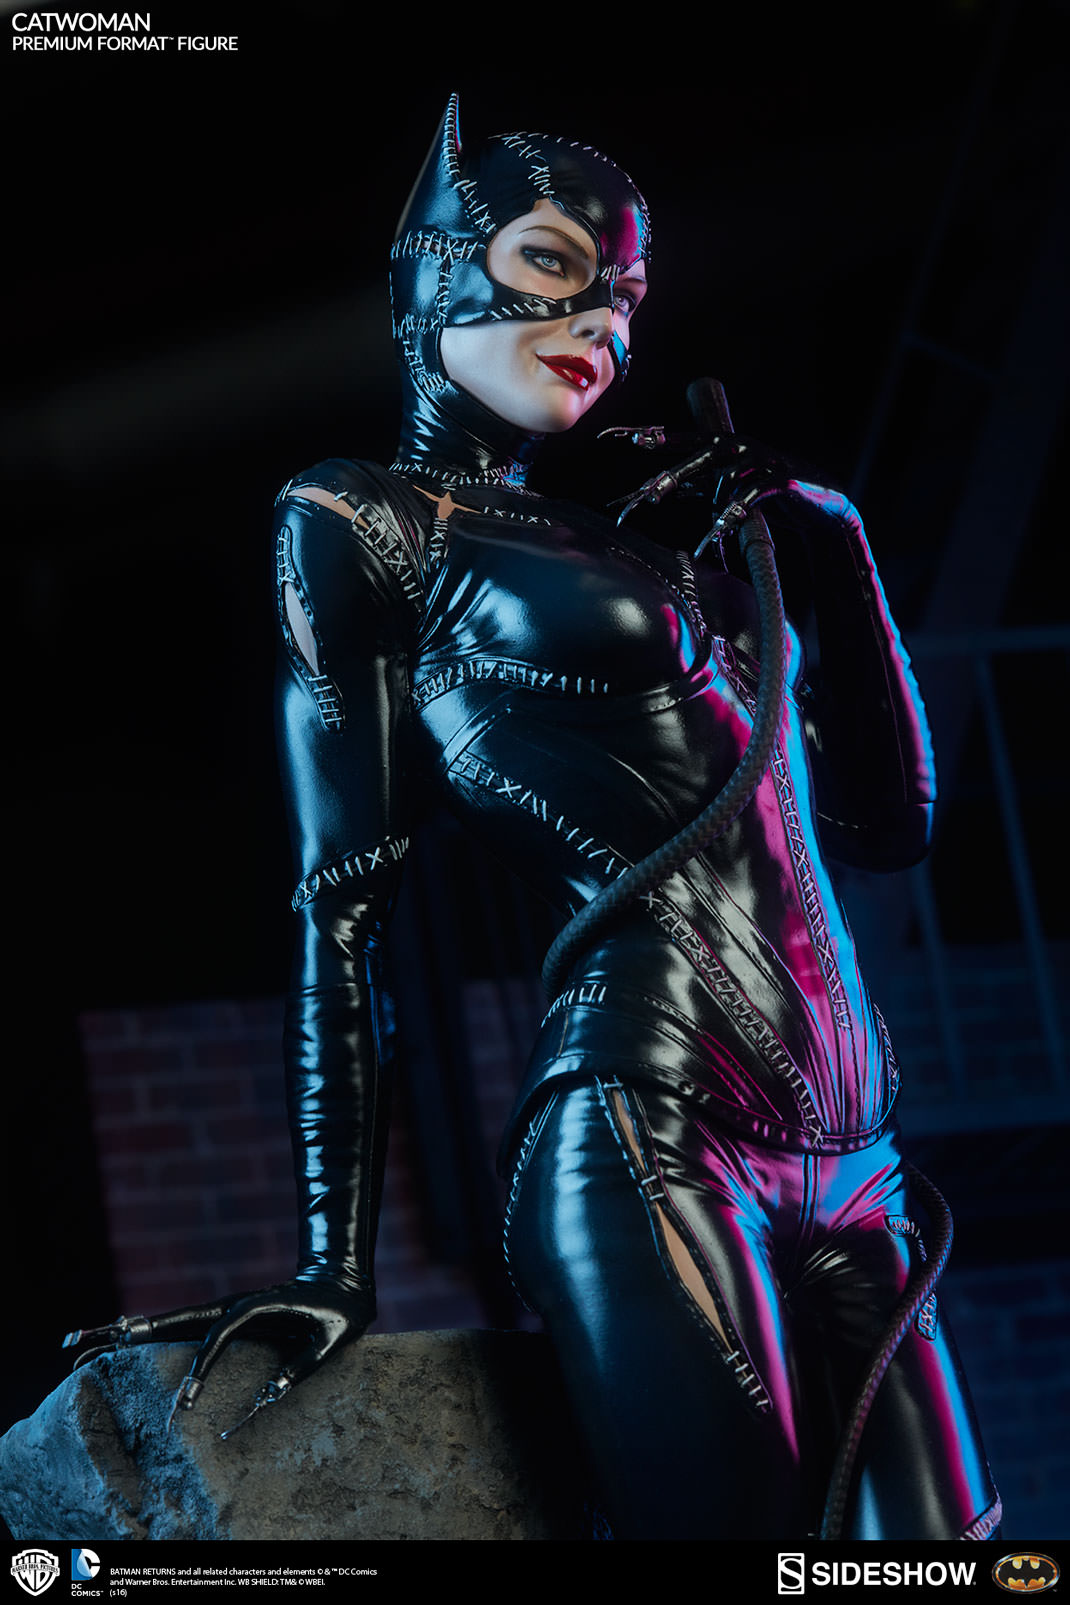 [Sideshow] Catwoman (Batman Returns) Attachment